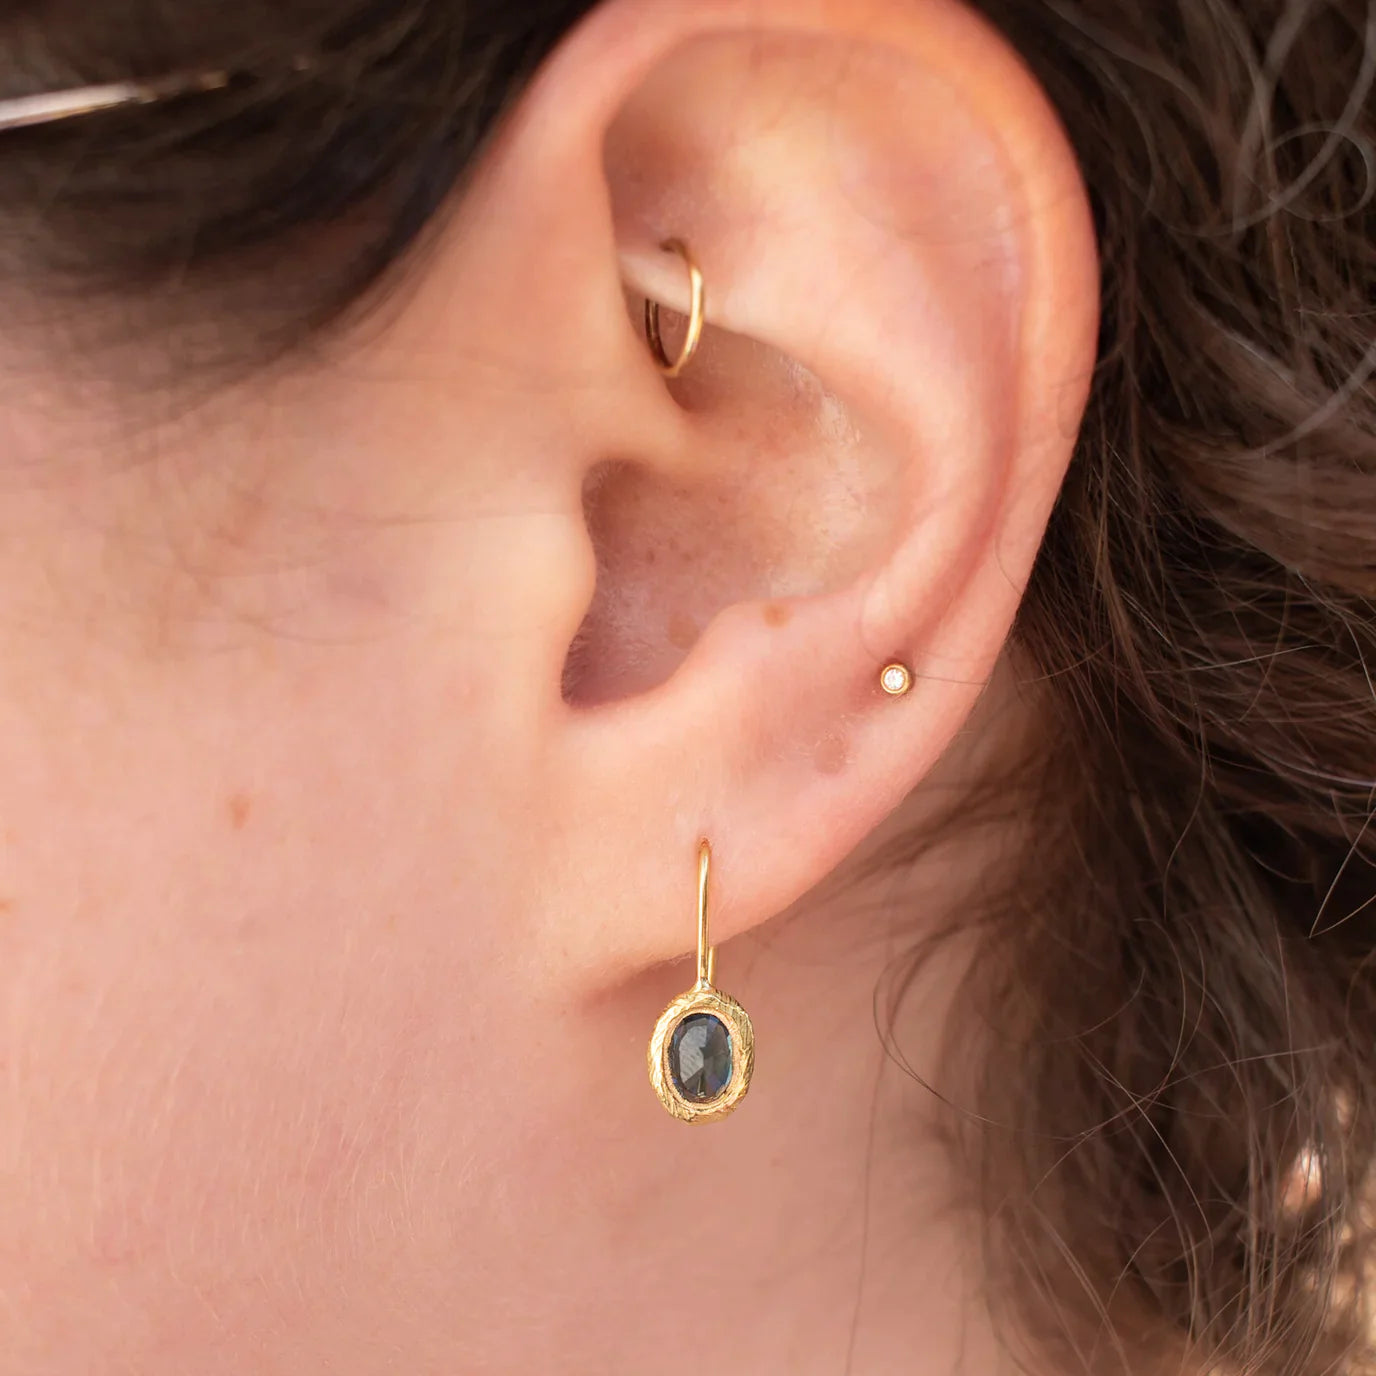 oval fixed hook earrings - blue sapphire